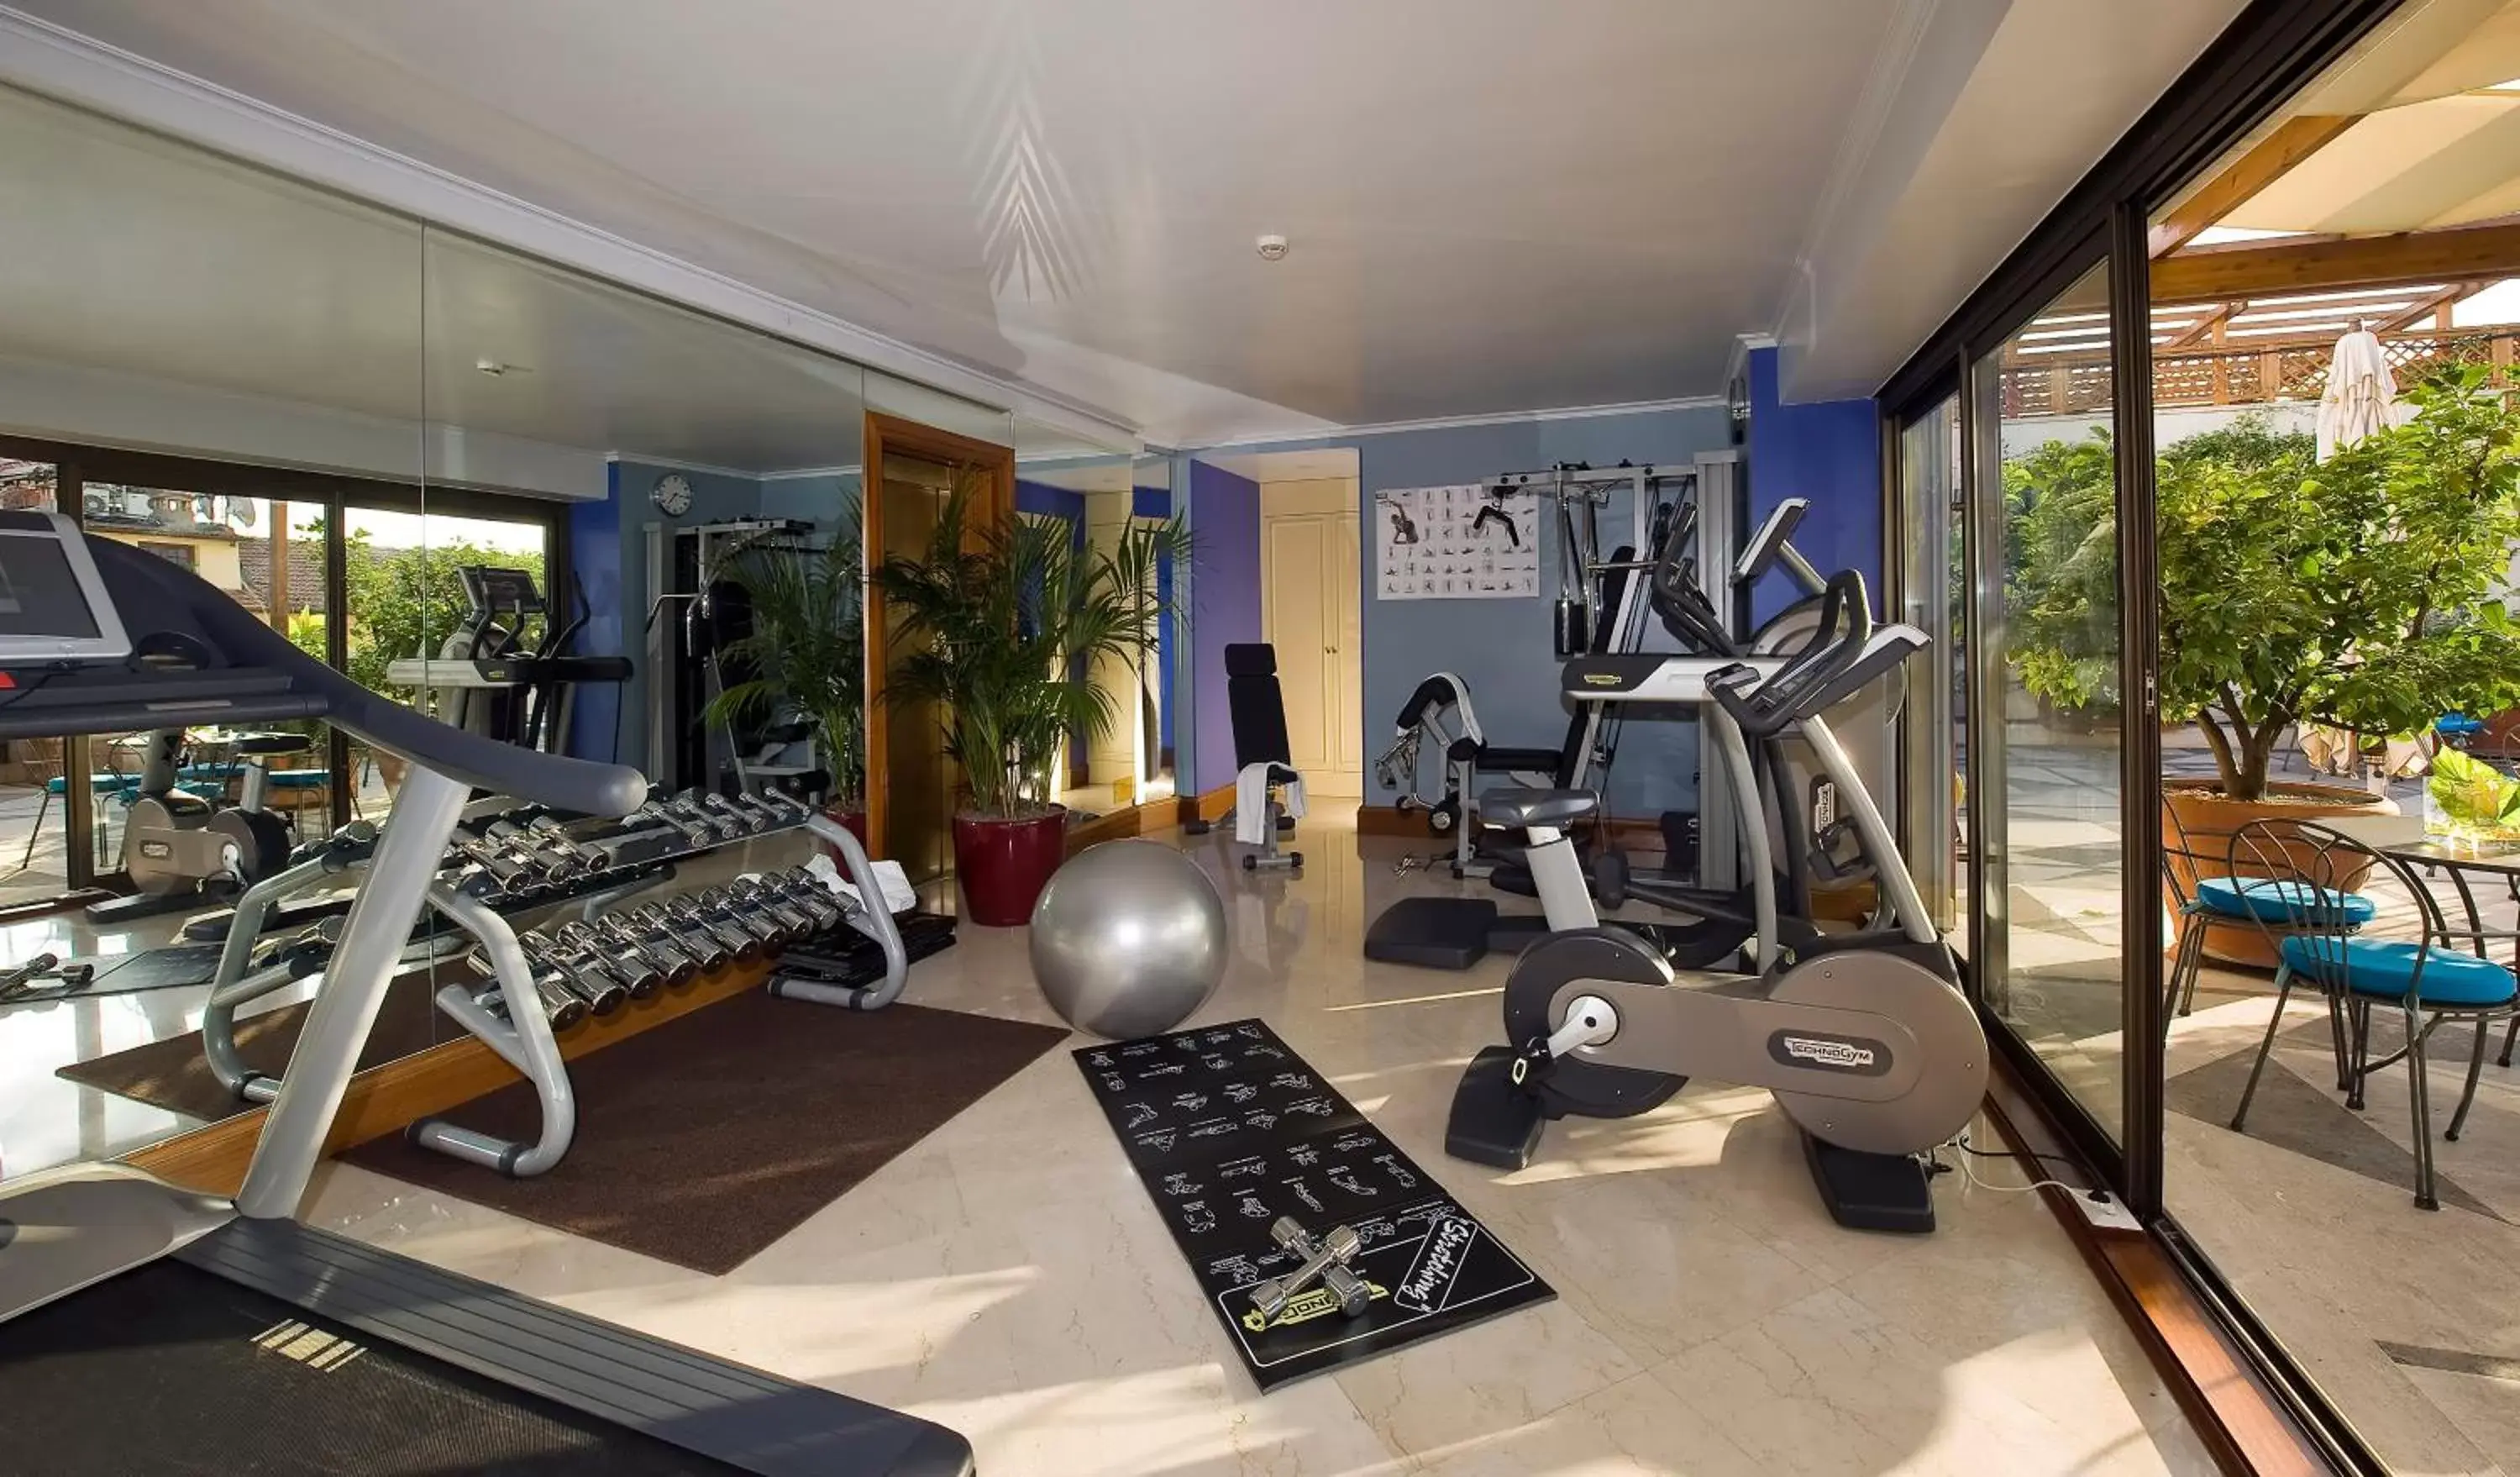 Fitness centre/facilities, Fitness Center/Facilities in Hotel dei Mellini